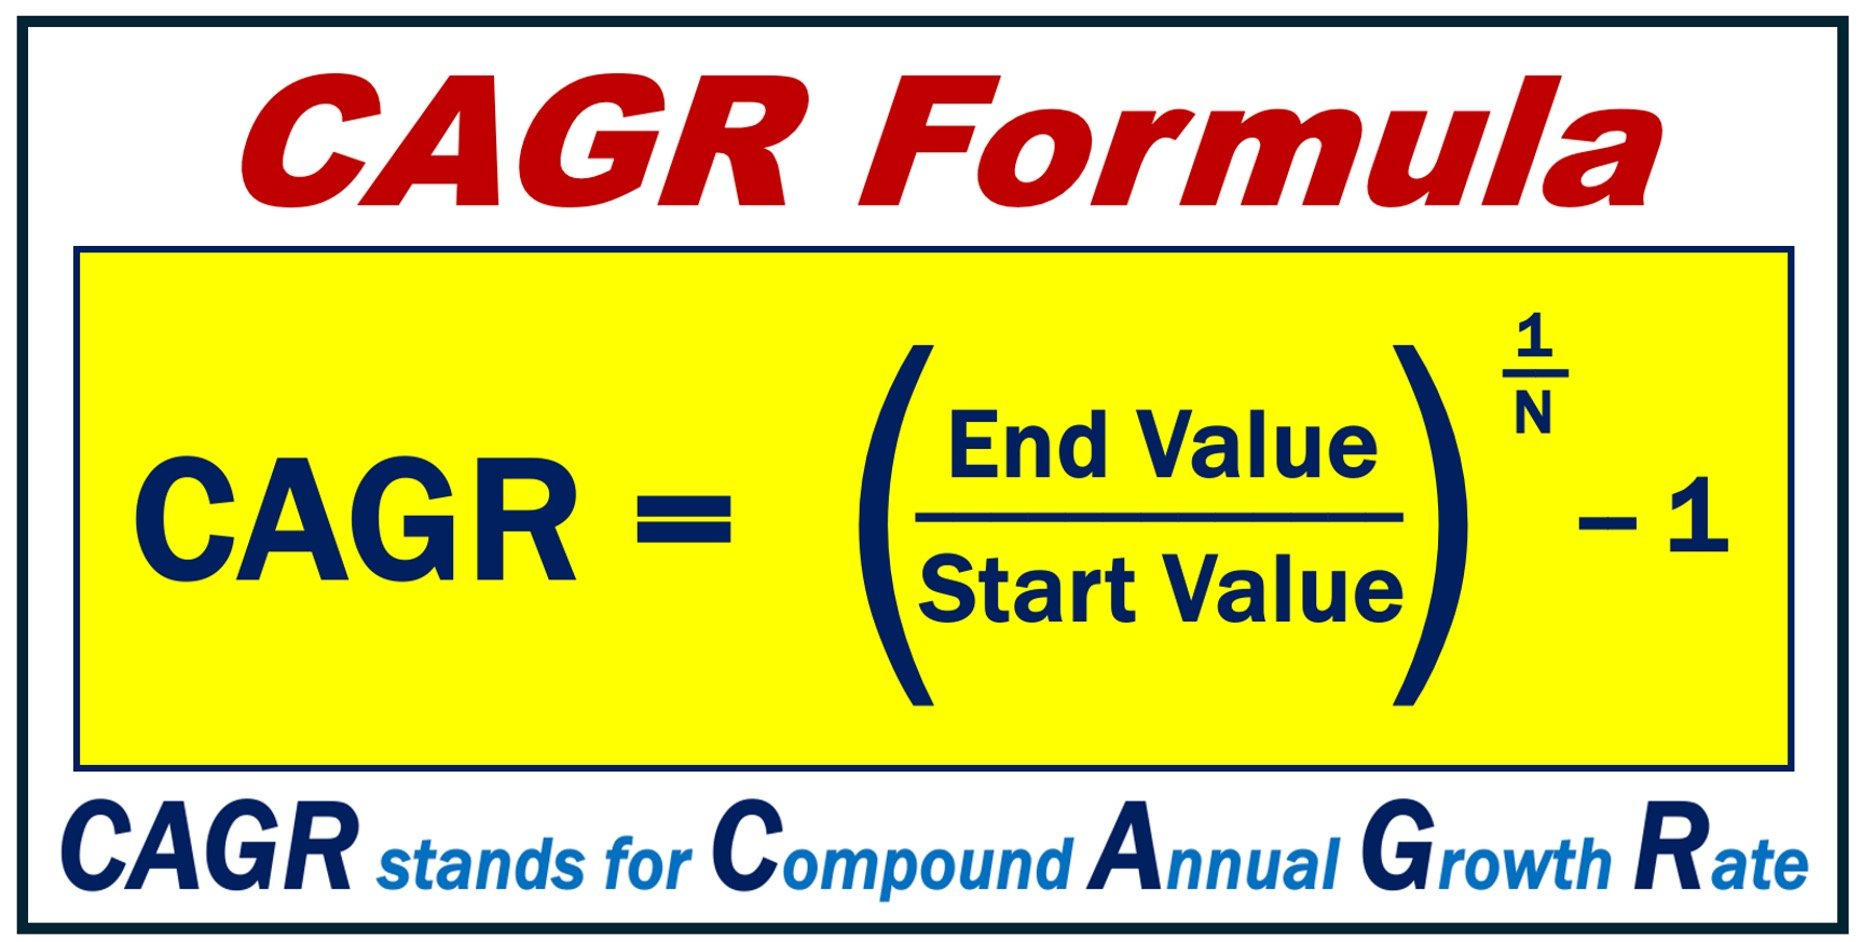 Image illustrating the CAGR Formula.